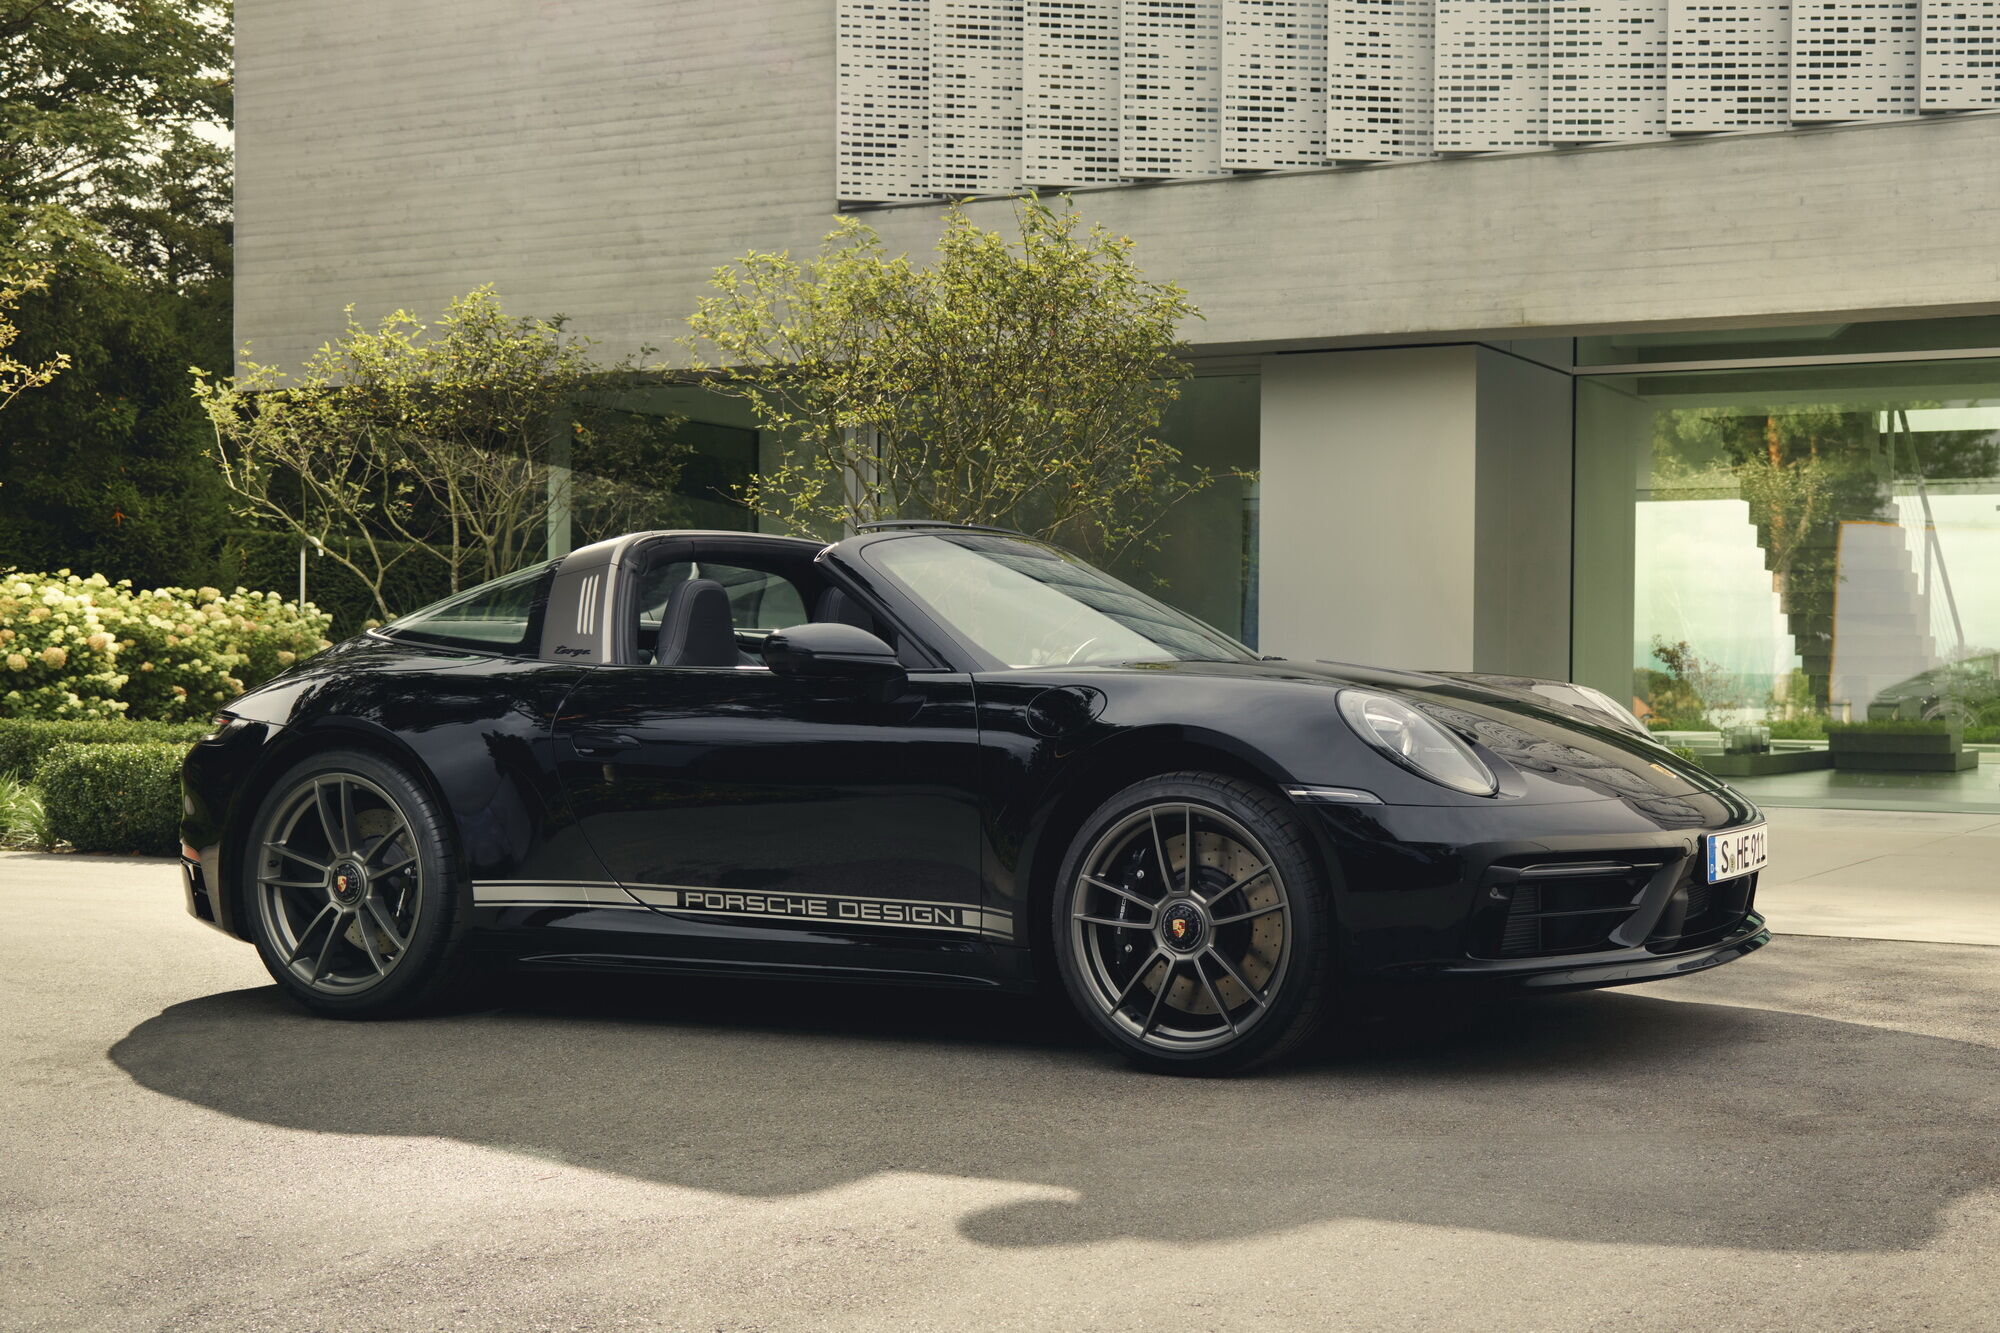 Porsche 911 Edition 50 Years Porsche Design буде випущений обмеженою серією у кількості 750 екземплярів